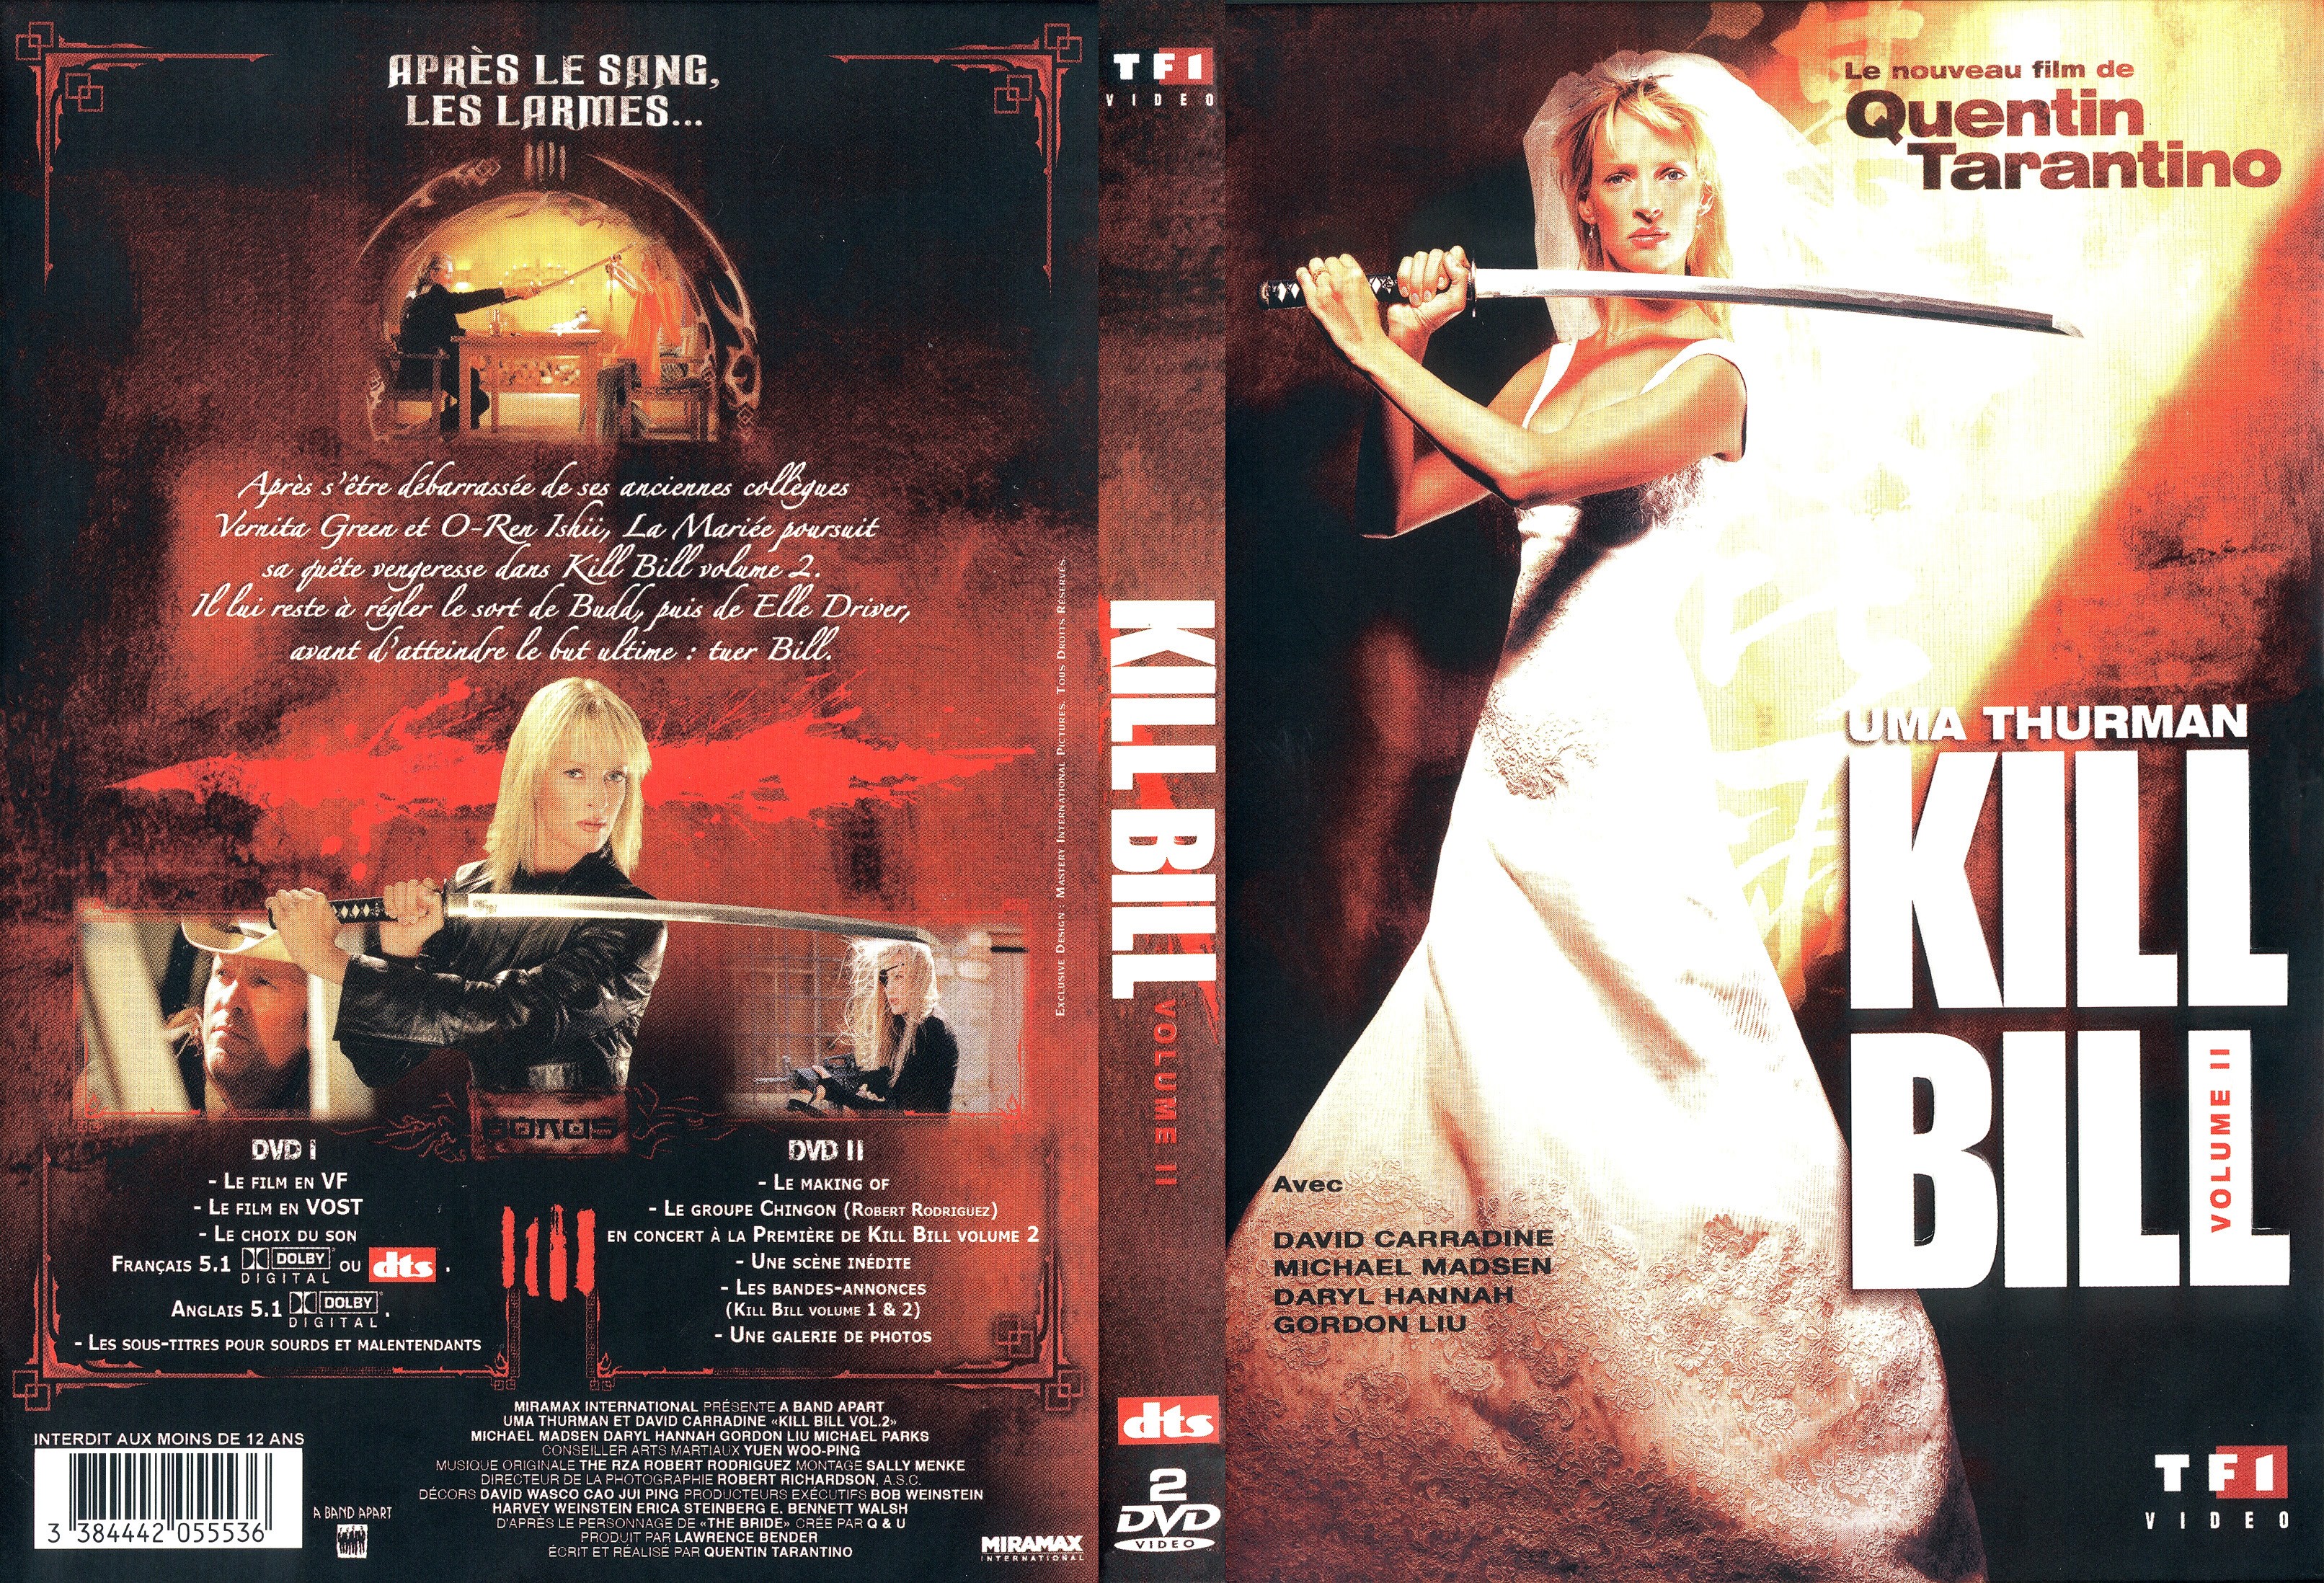 Jaquette DVD Kill bill vol 2